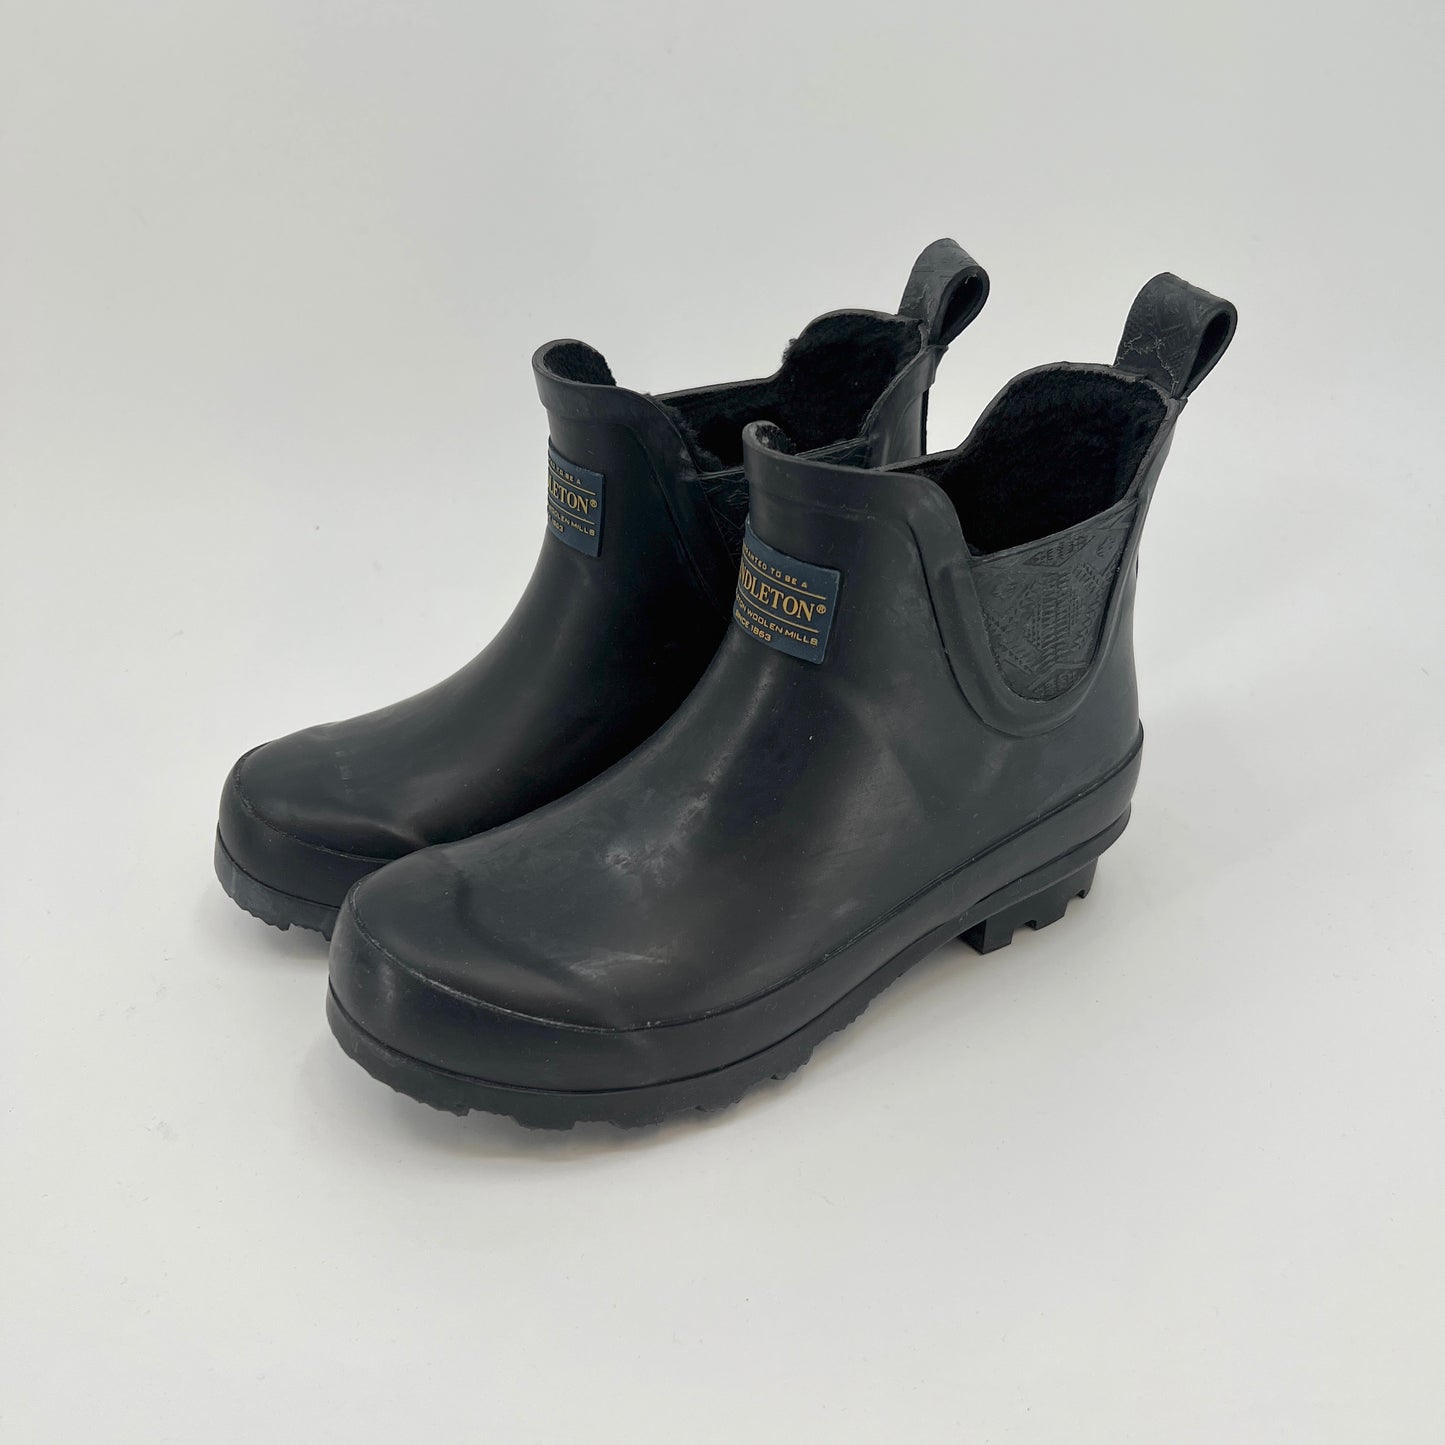 SOLD. Pendlenton Chelsea Rubber Boots 6